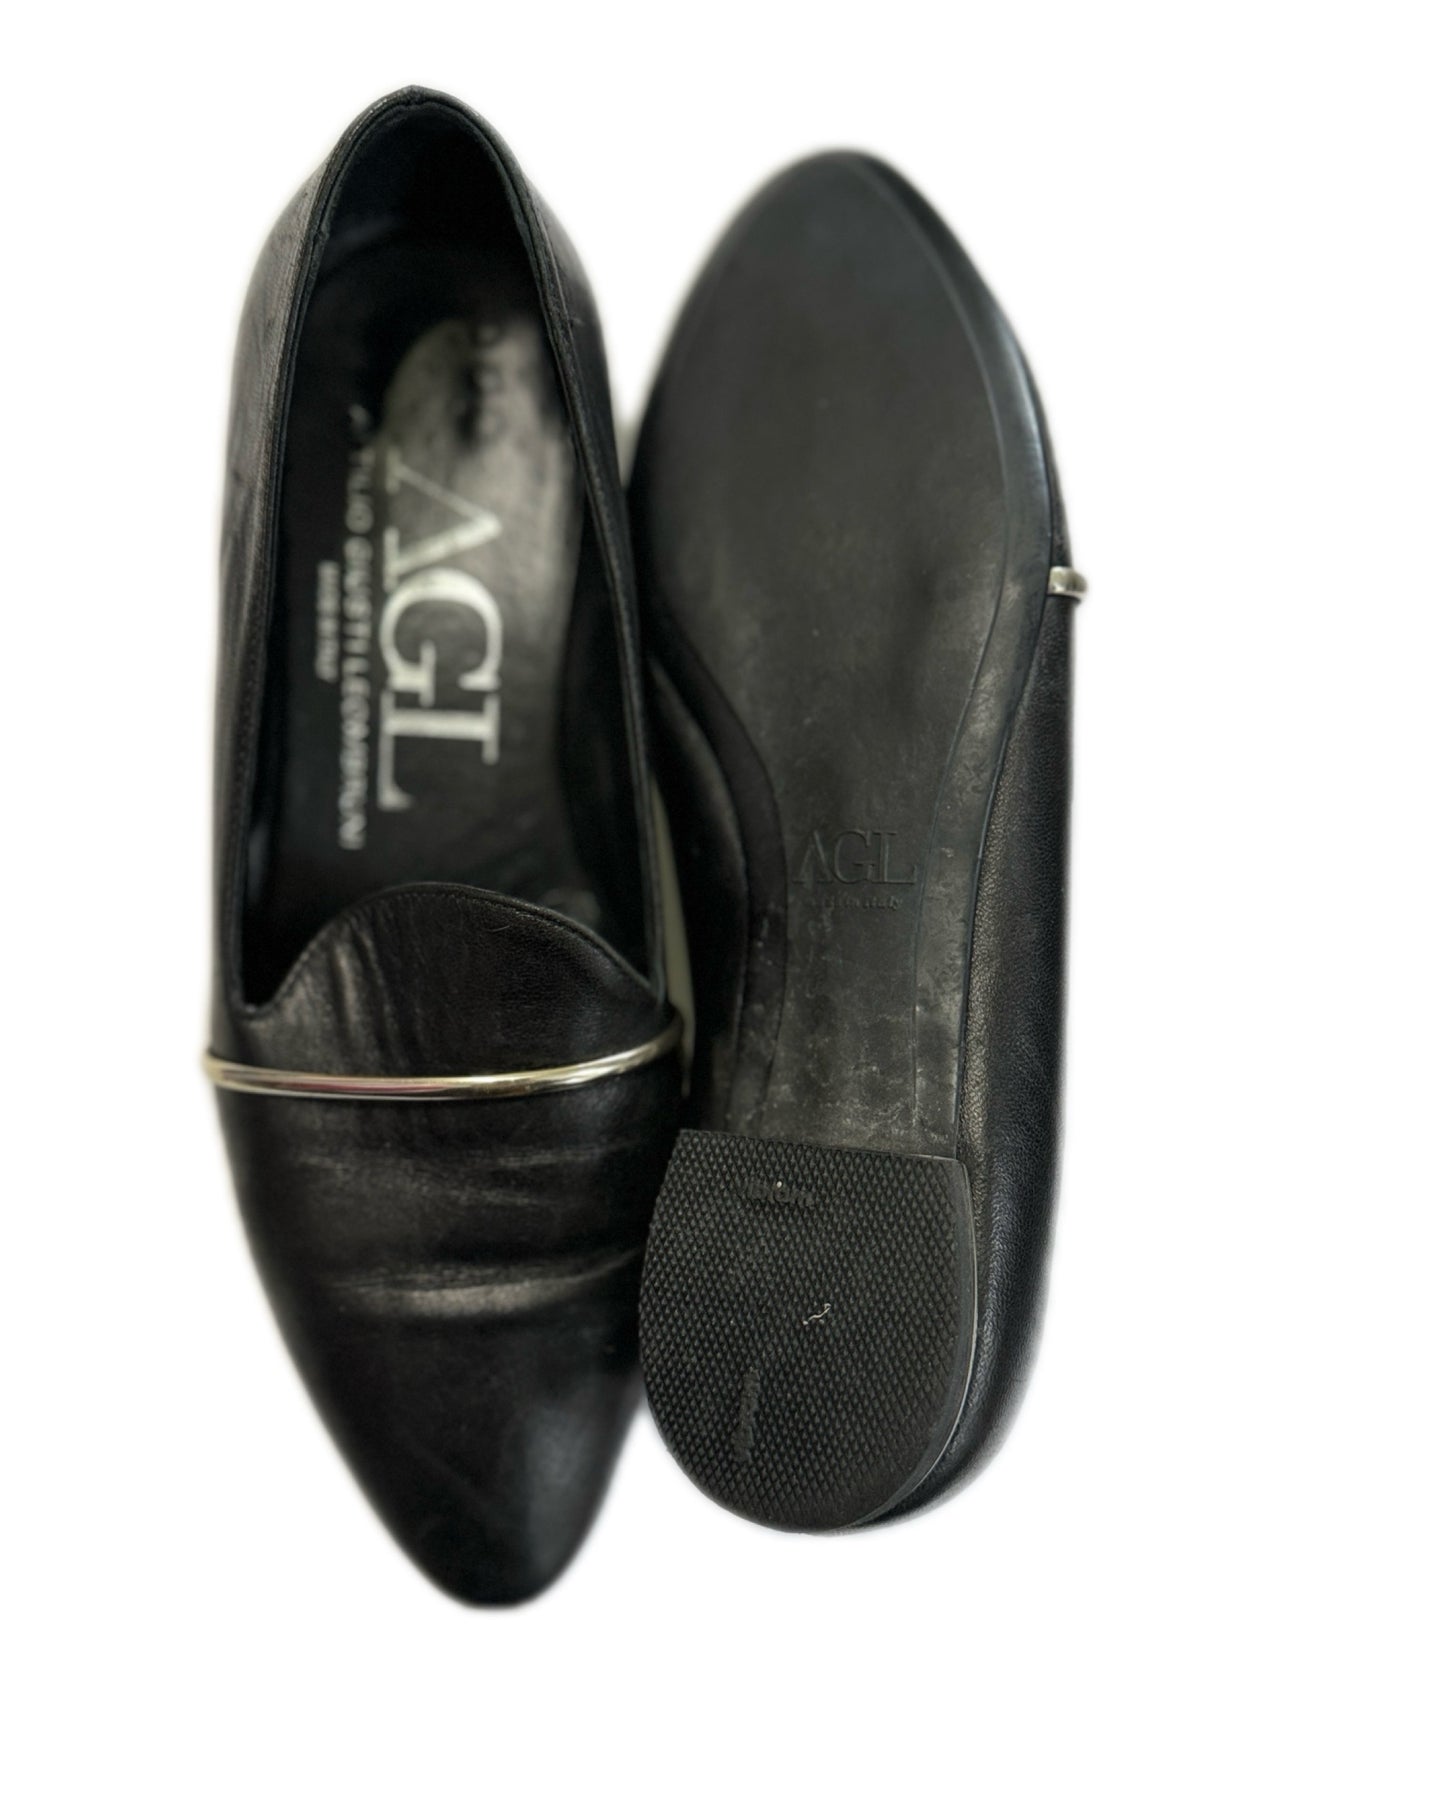 Shoe Size 7-7 1/2 AGL Black Shoes